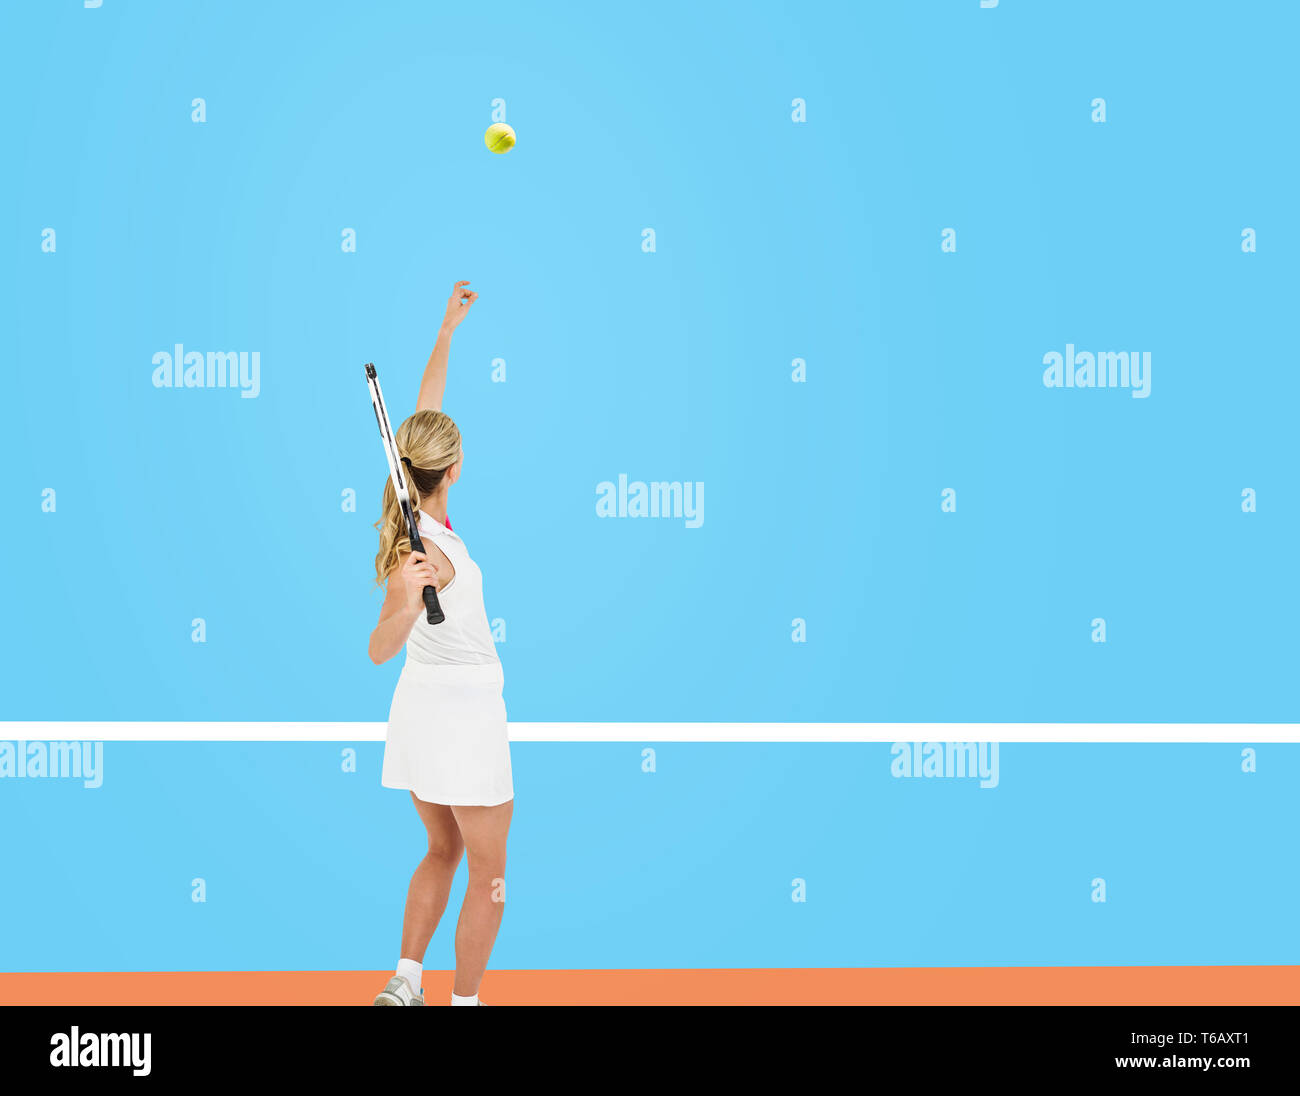 Zusammengesetztes Bild der Athlet hält einen Tennisschläger servierfertig Stockfoto